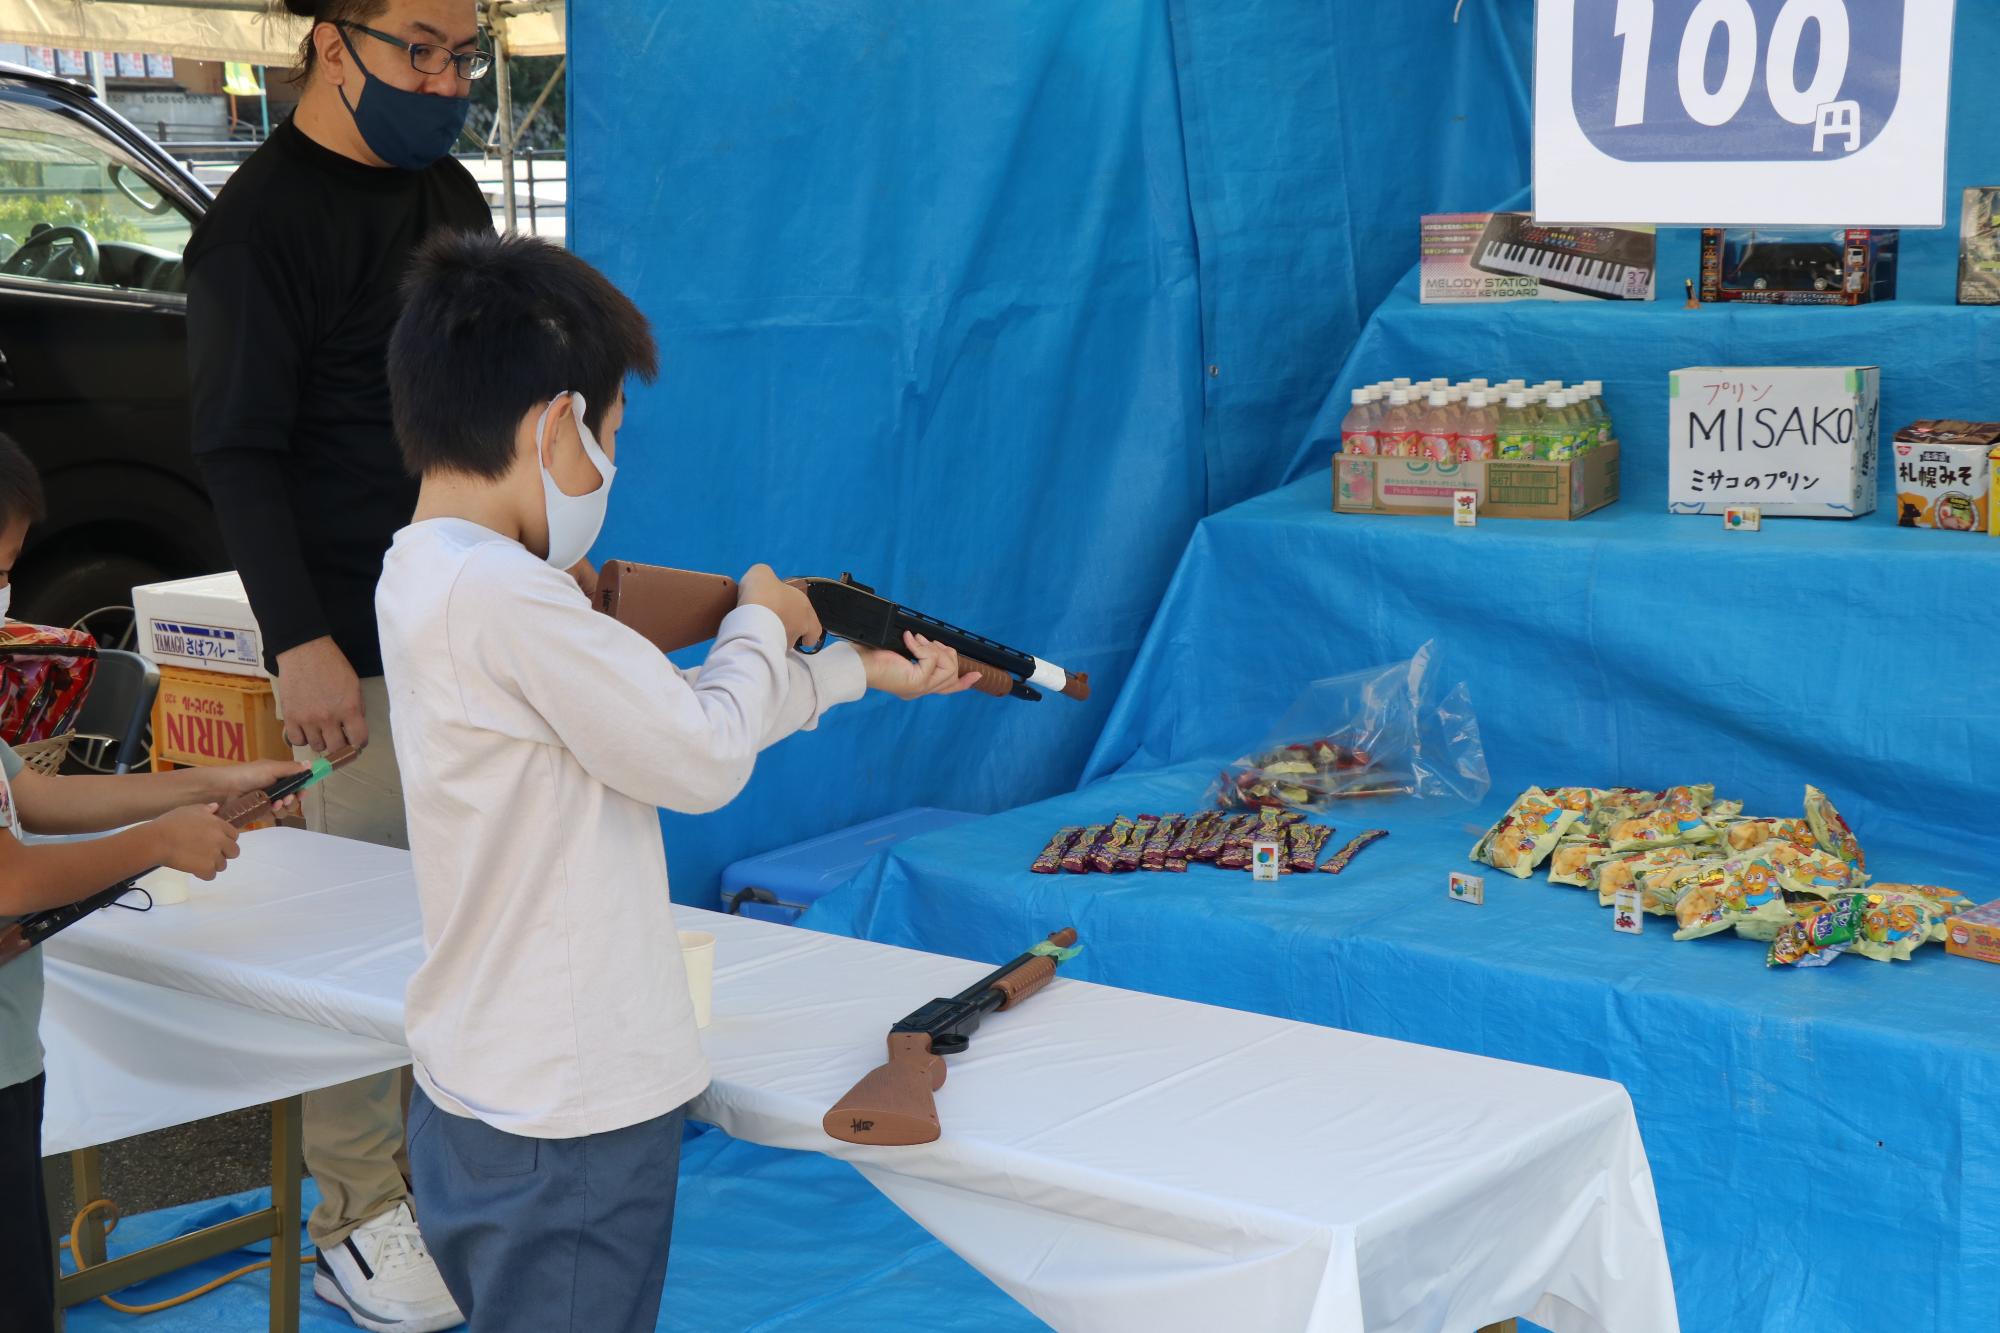 射的ゲームで子どもがおもちゃの銃を構えて的を狙っている写真